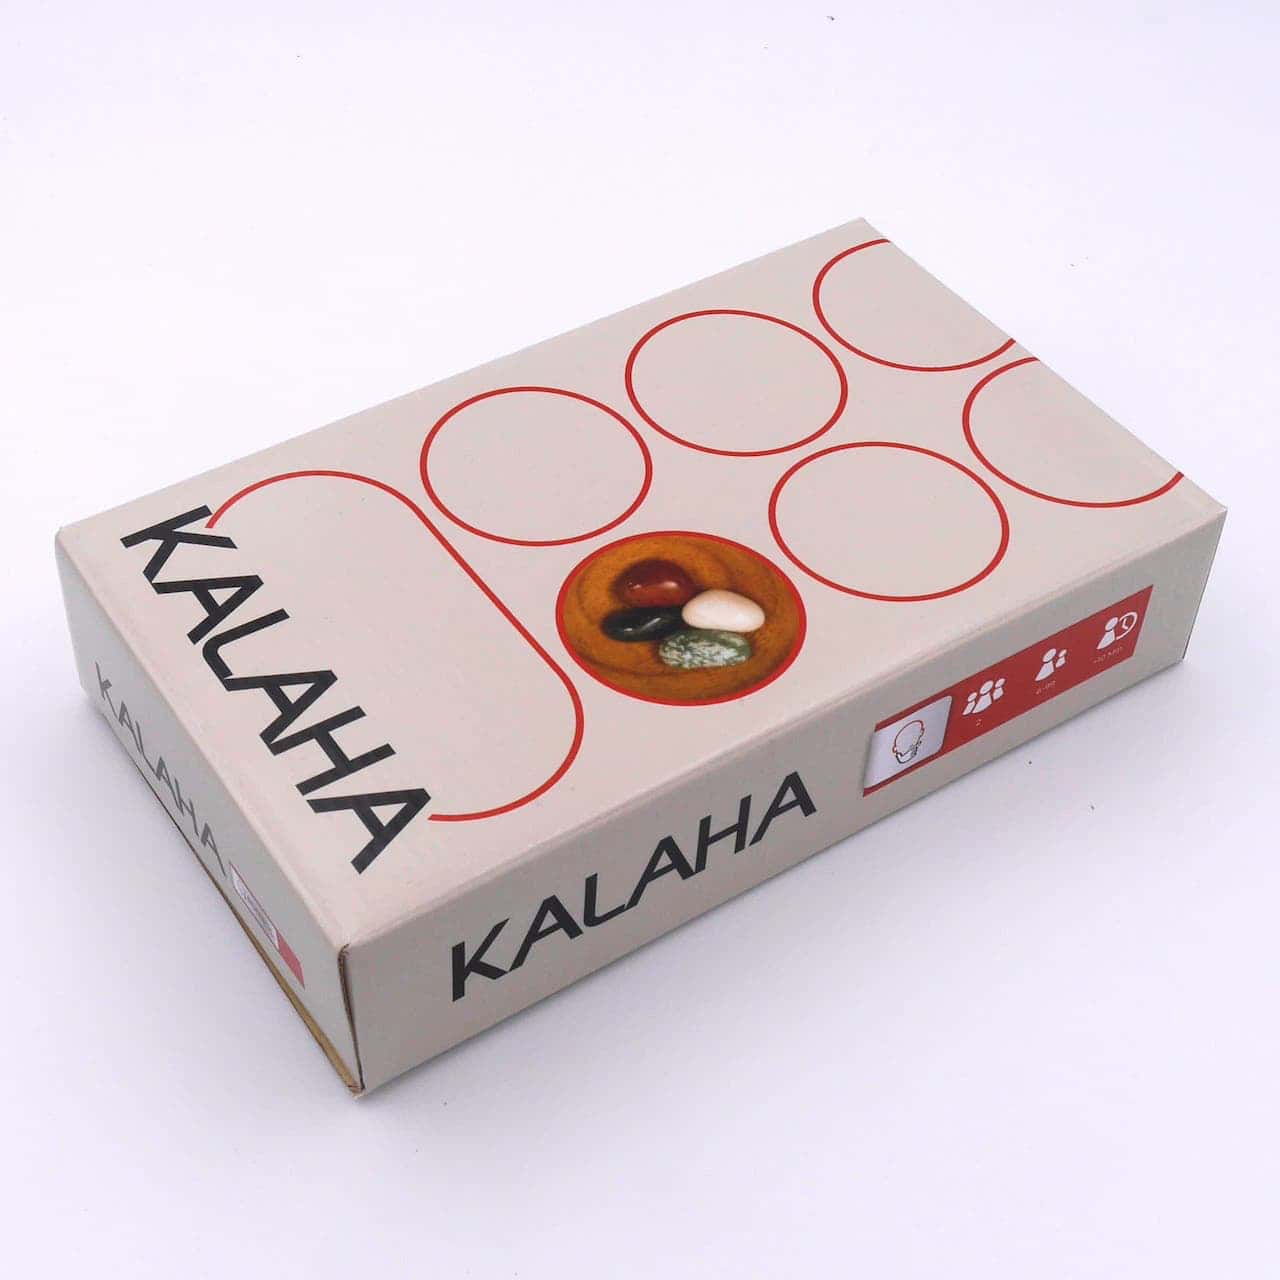 Kalaha - hochwertiges Steinchenspiel inkl. Spielsteinen aus Holz für 2 Personen